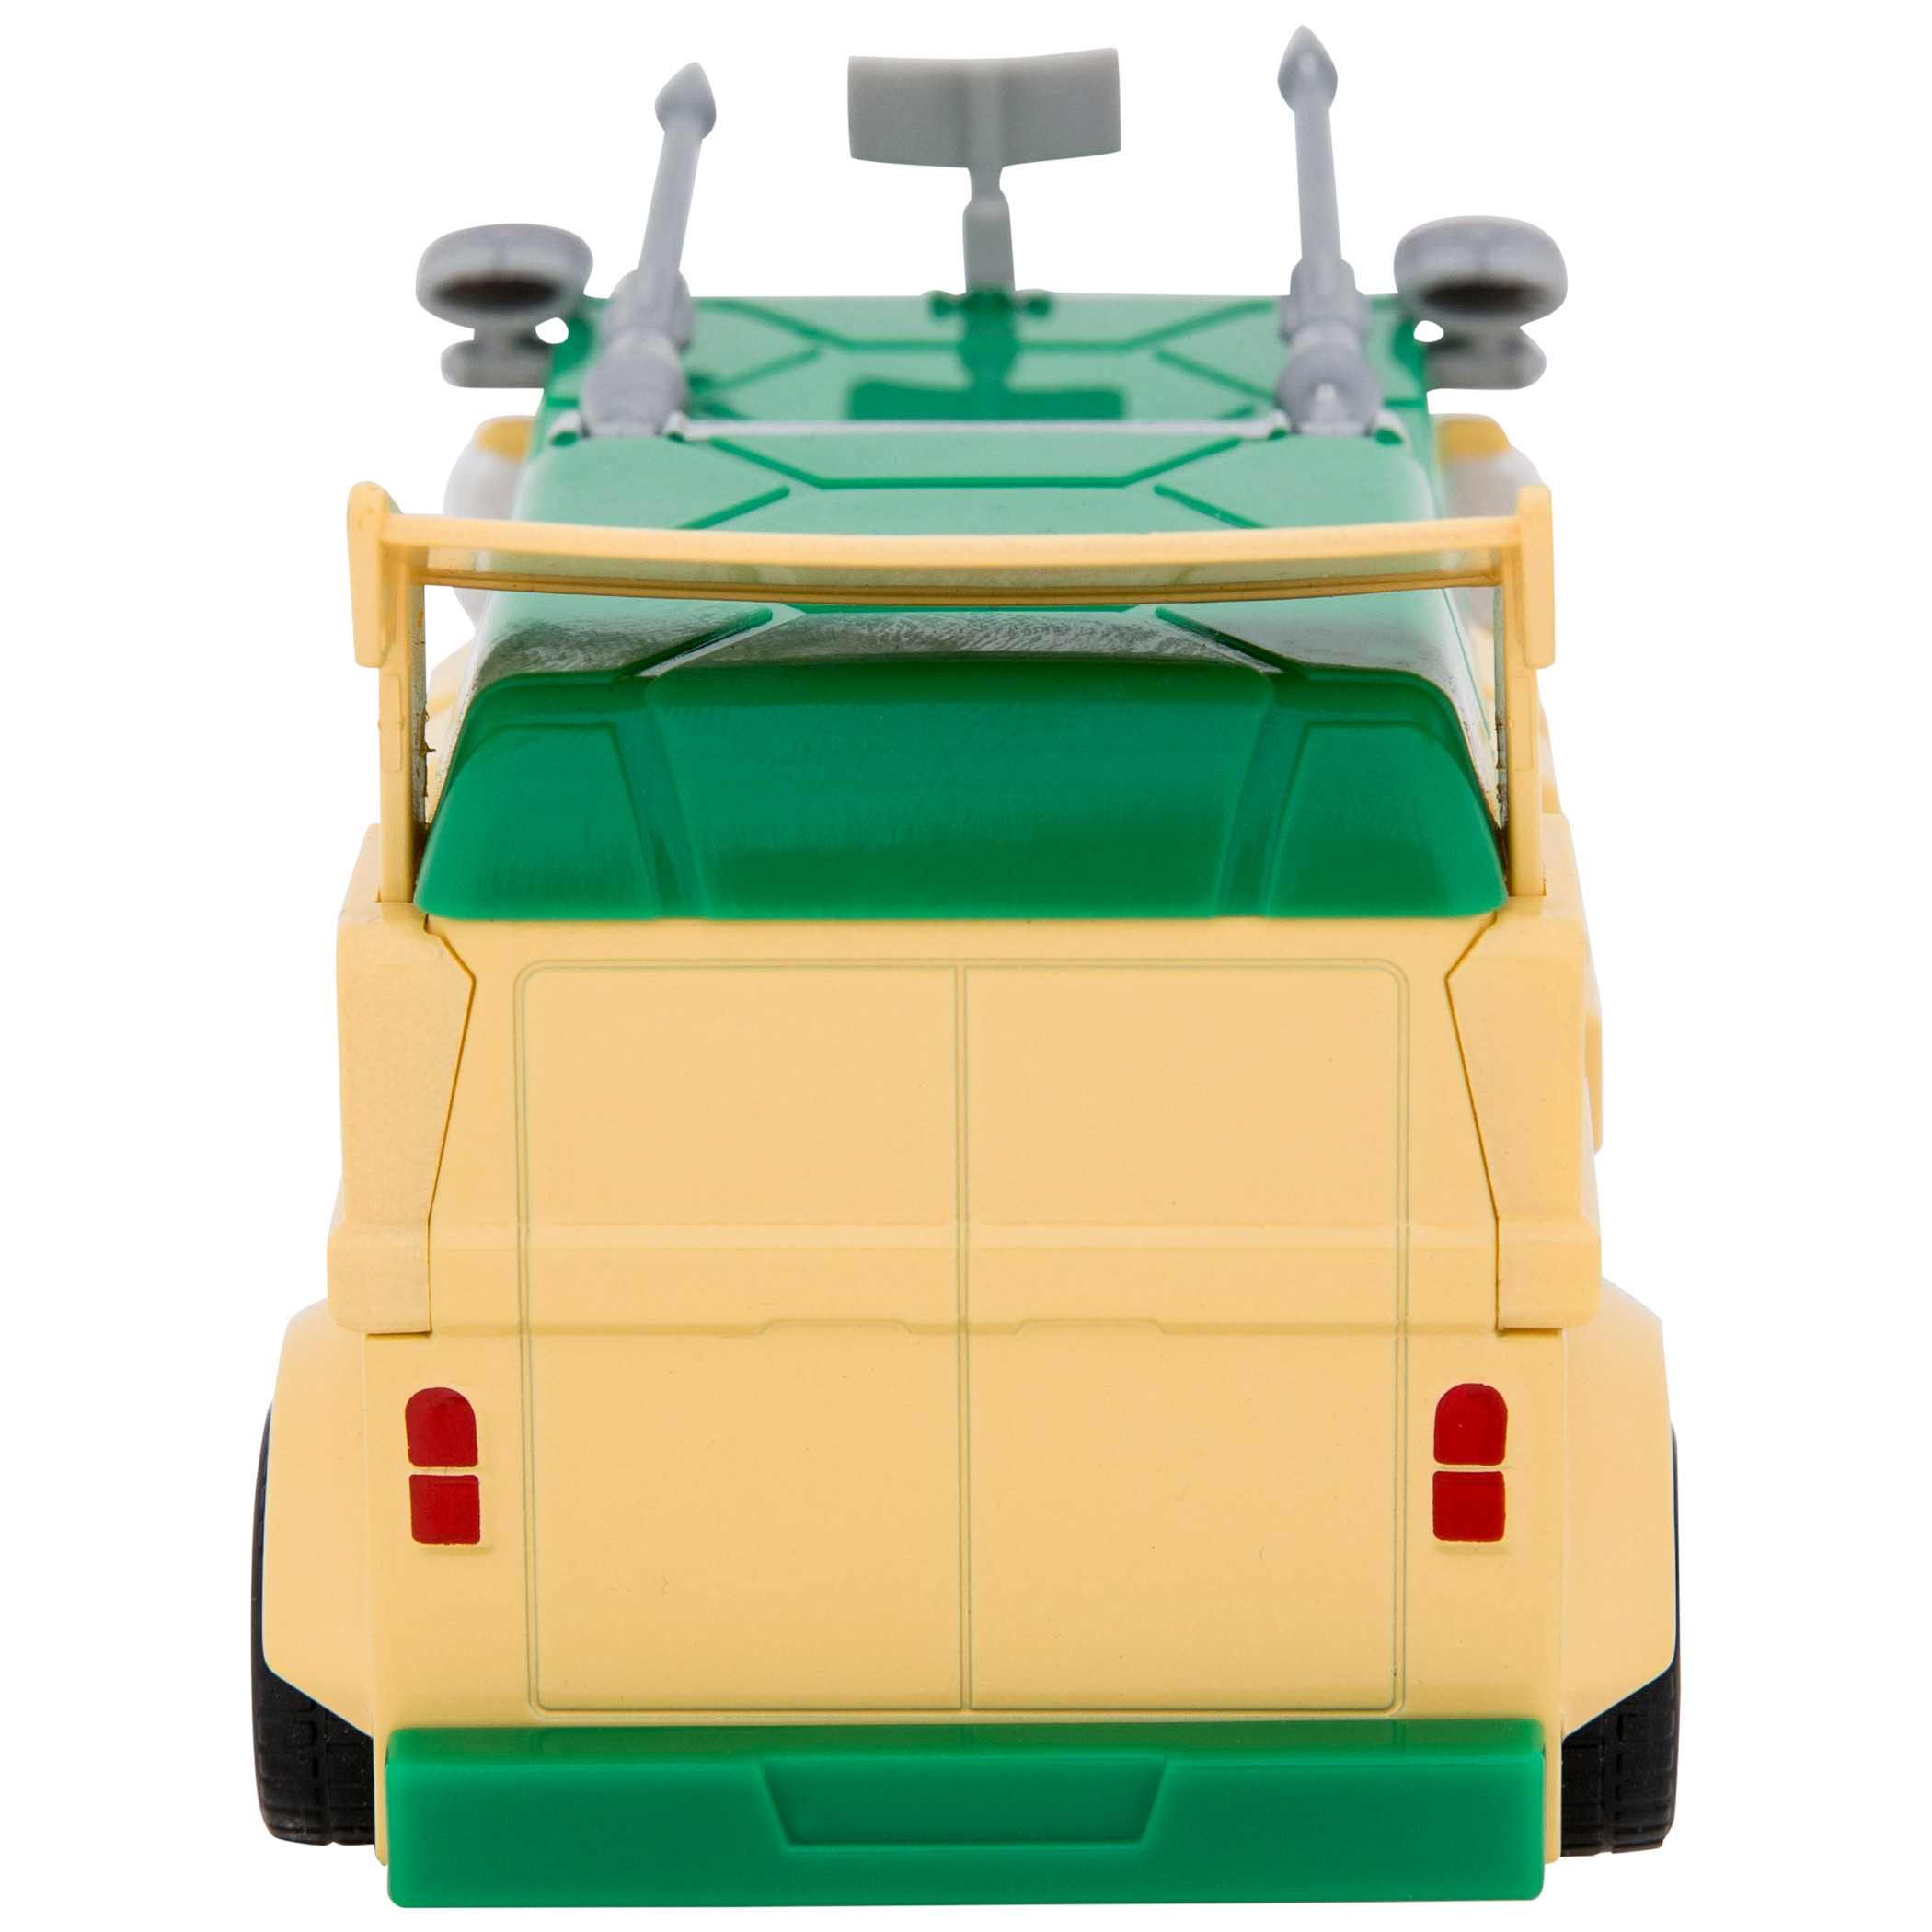 Teenage Mutant Ninja Turtles Party Wagon Die-Cast Car by Jada Toys